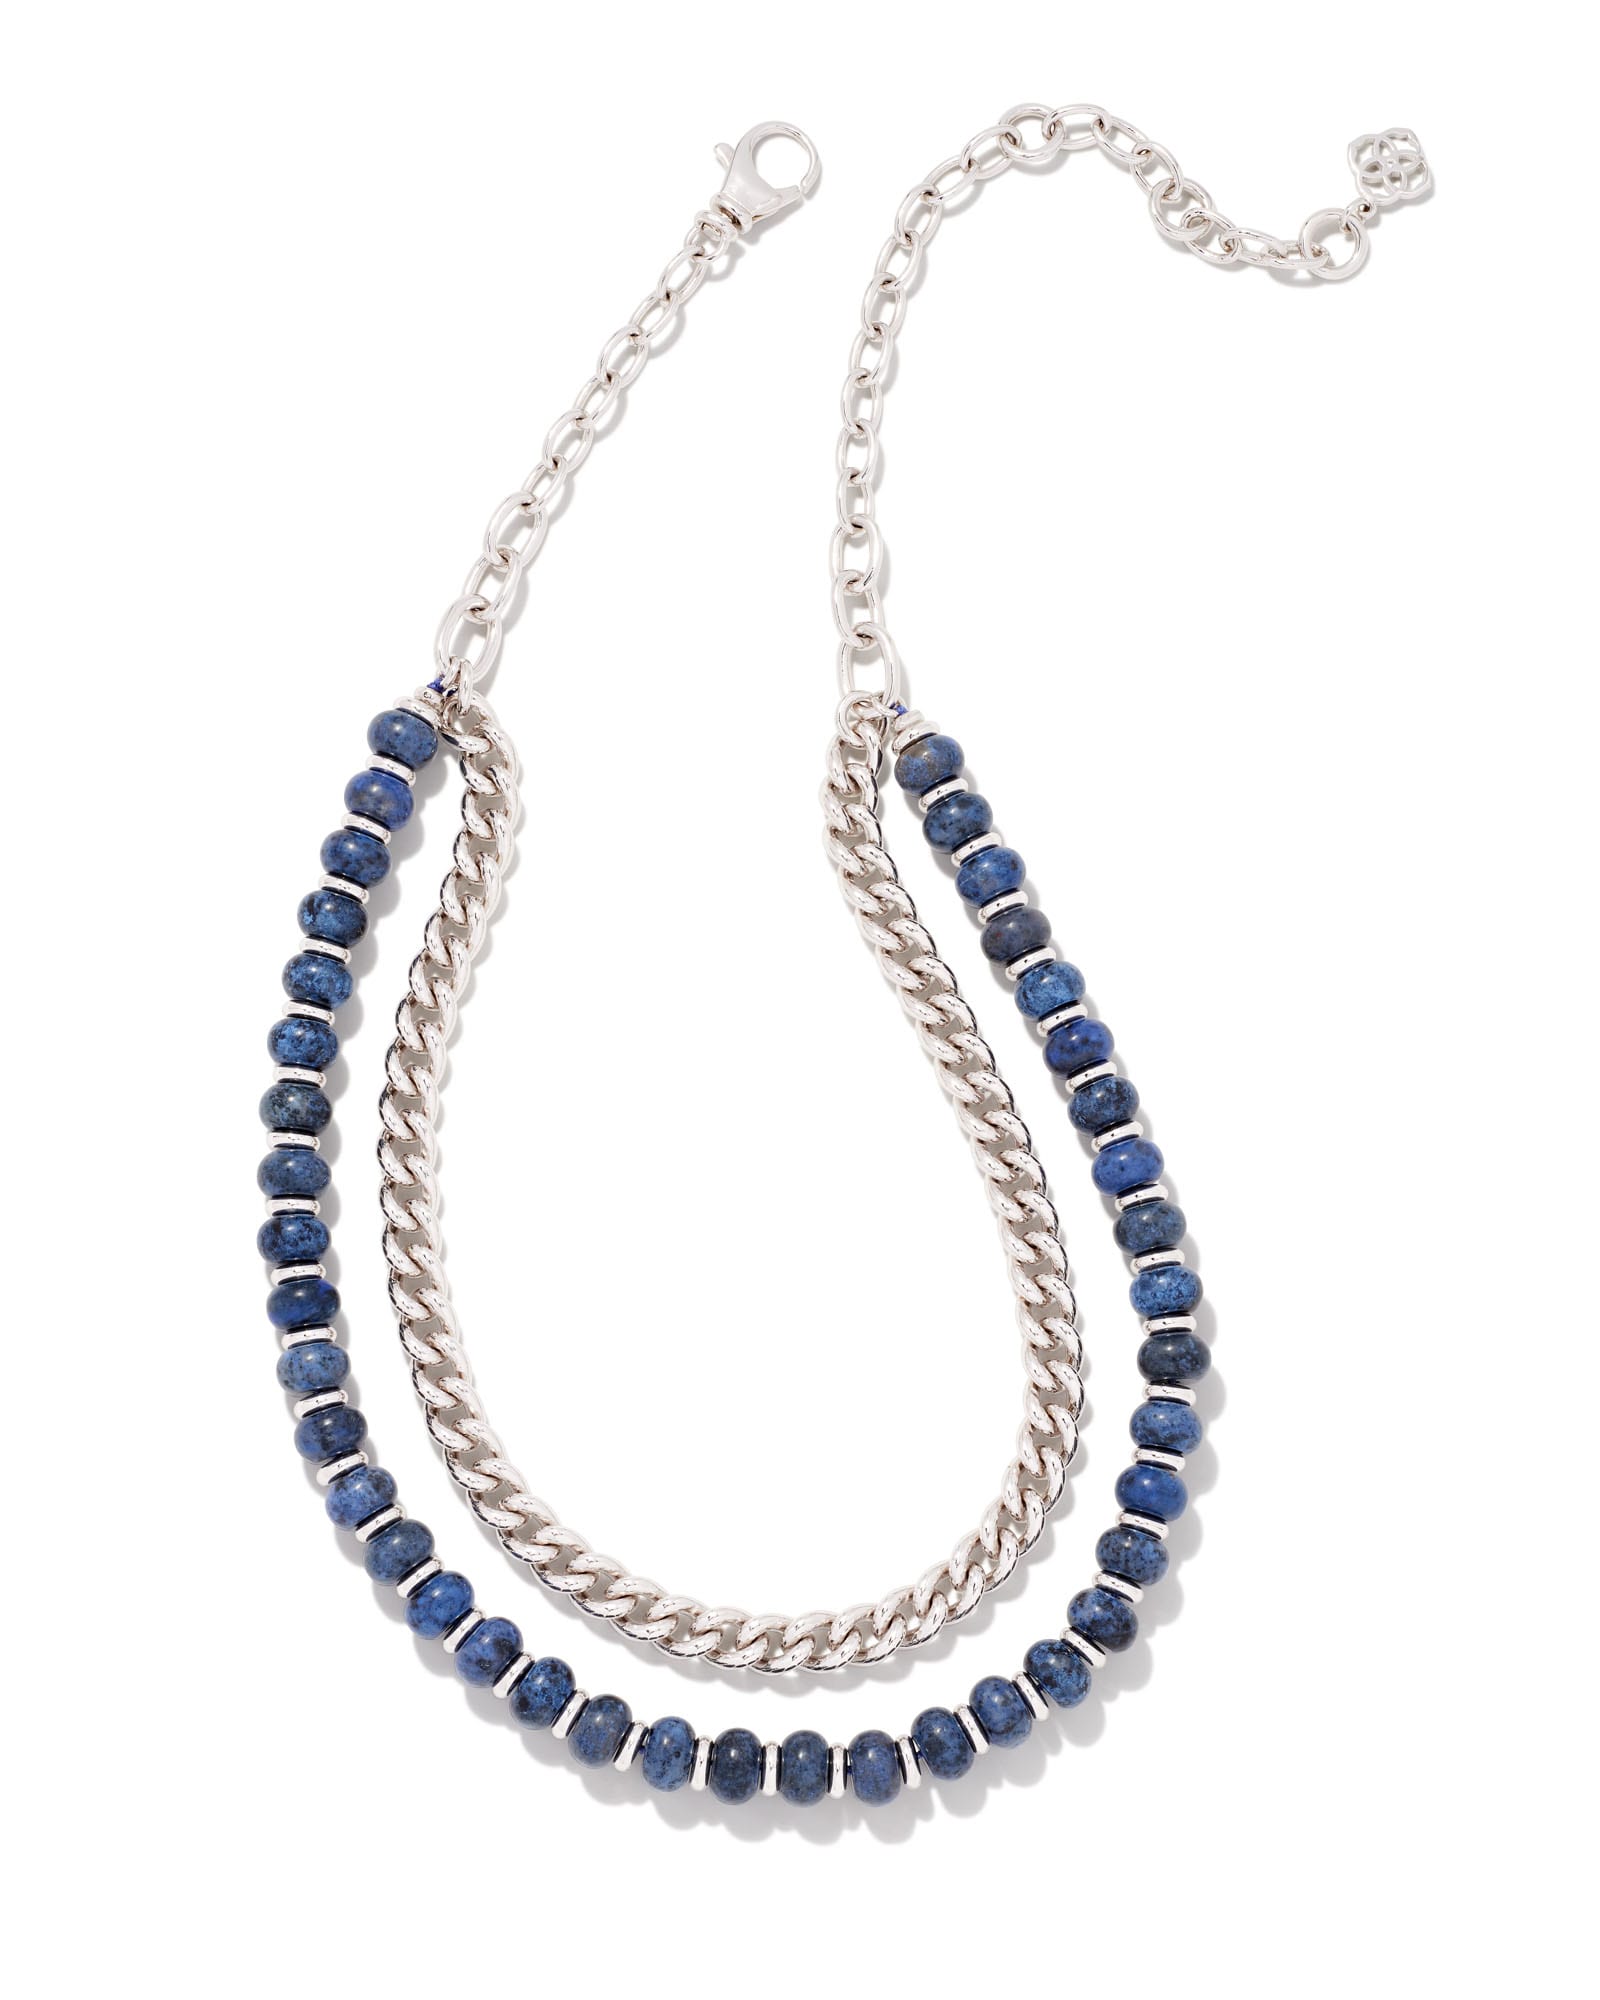 Rebecca Silver Multi Strand Necklace in Blue Dumortierite